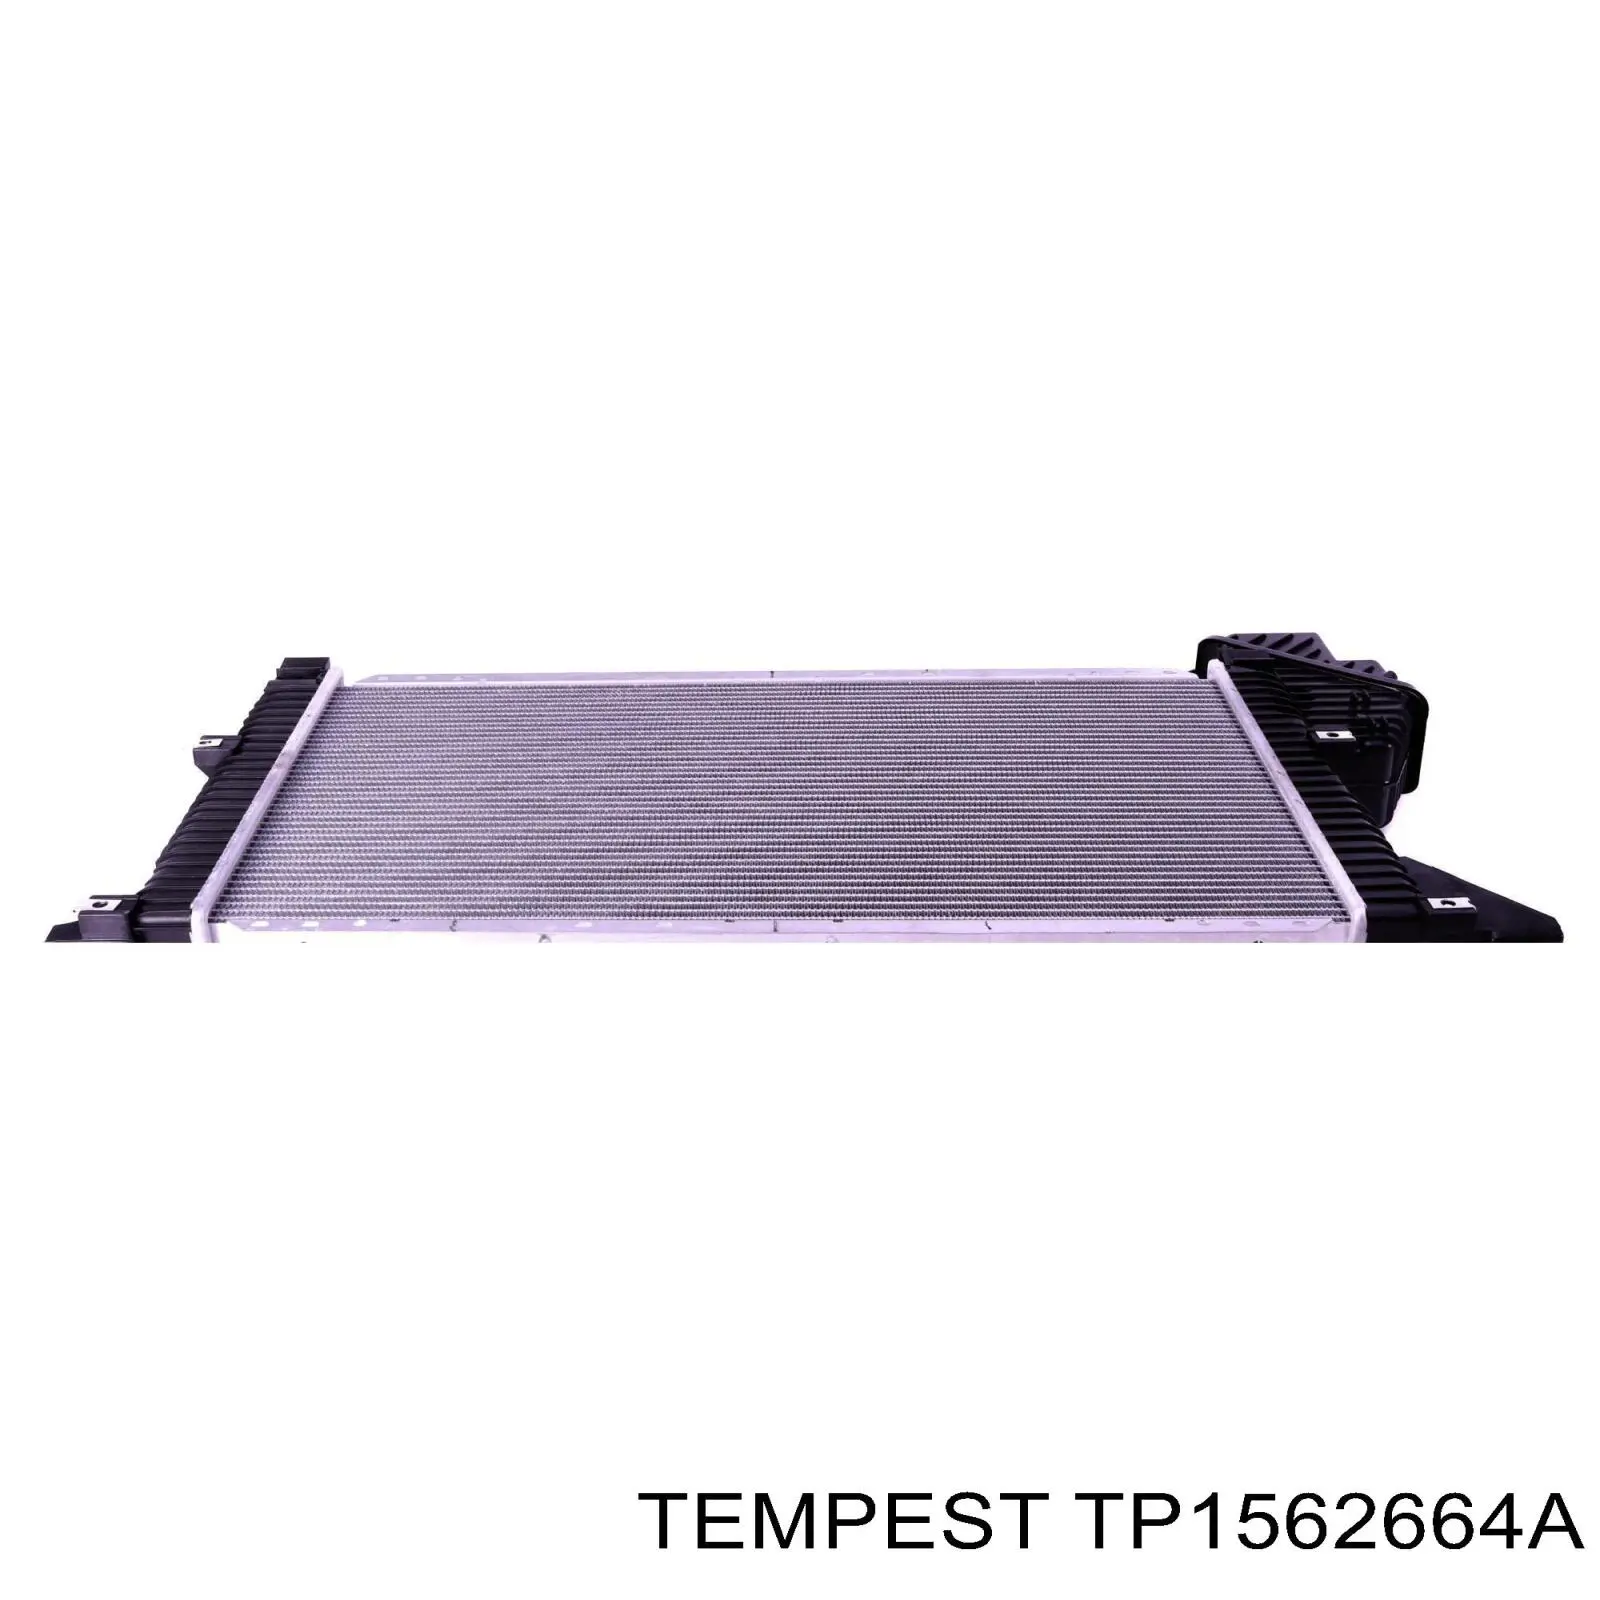 TP1562664A Tempest radiador